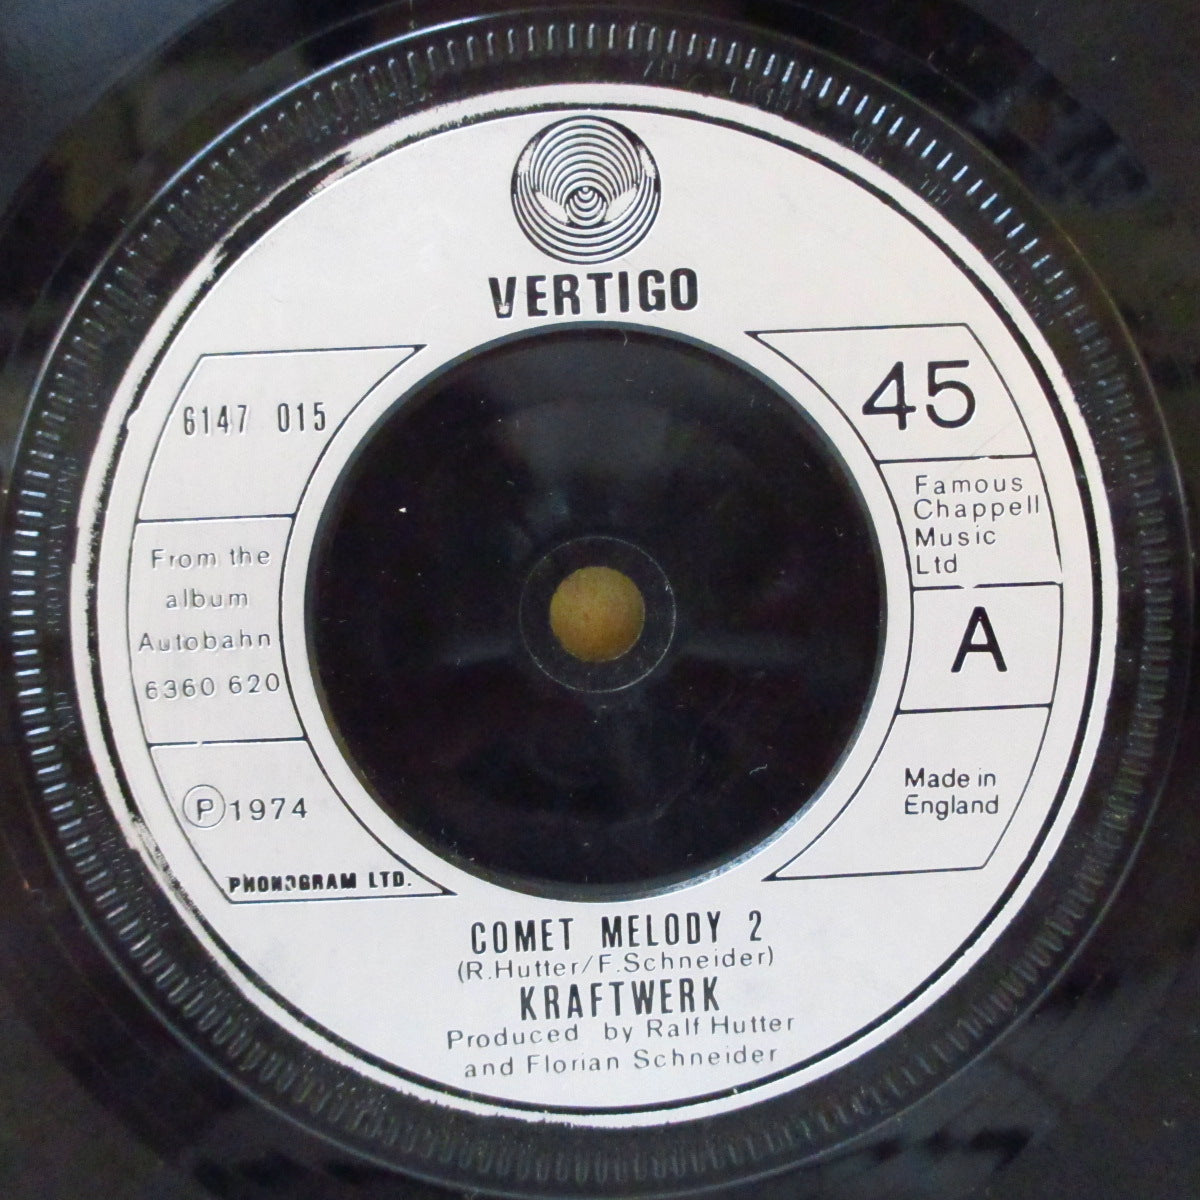 クラフトワーク 1971 オリジナル HIGHRAIL - レコード